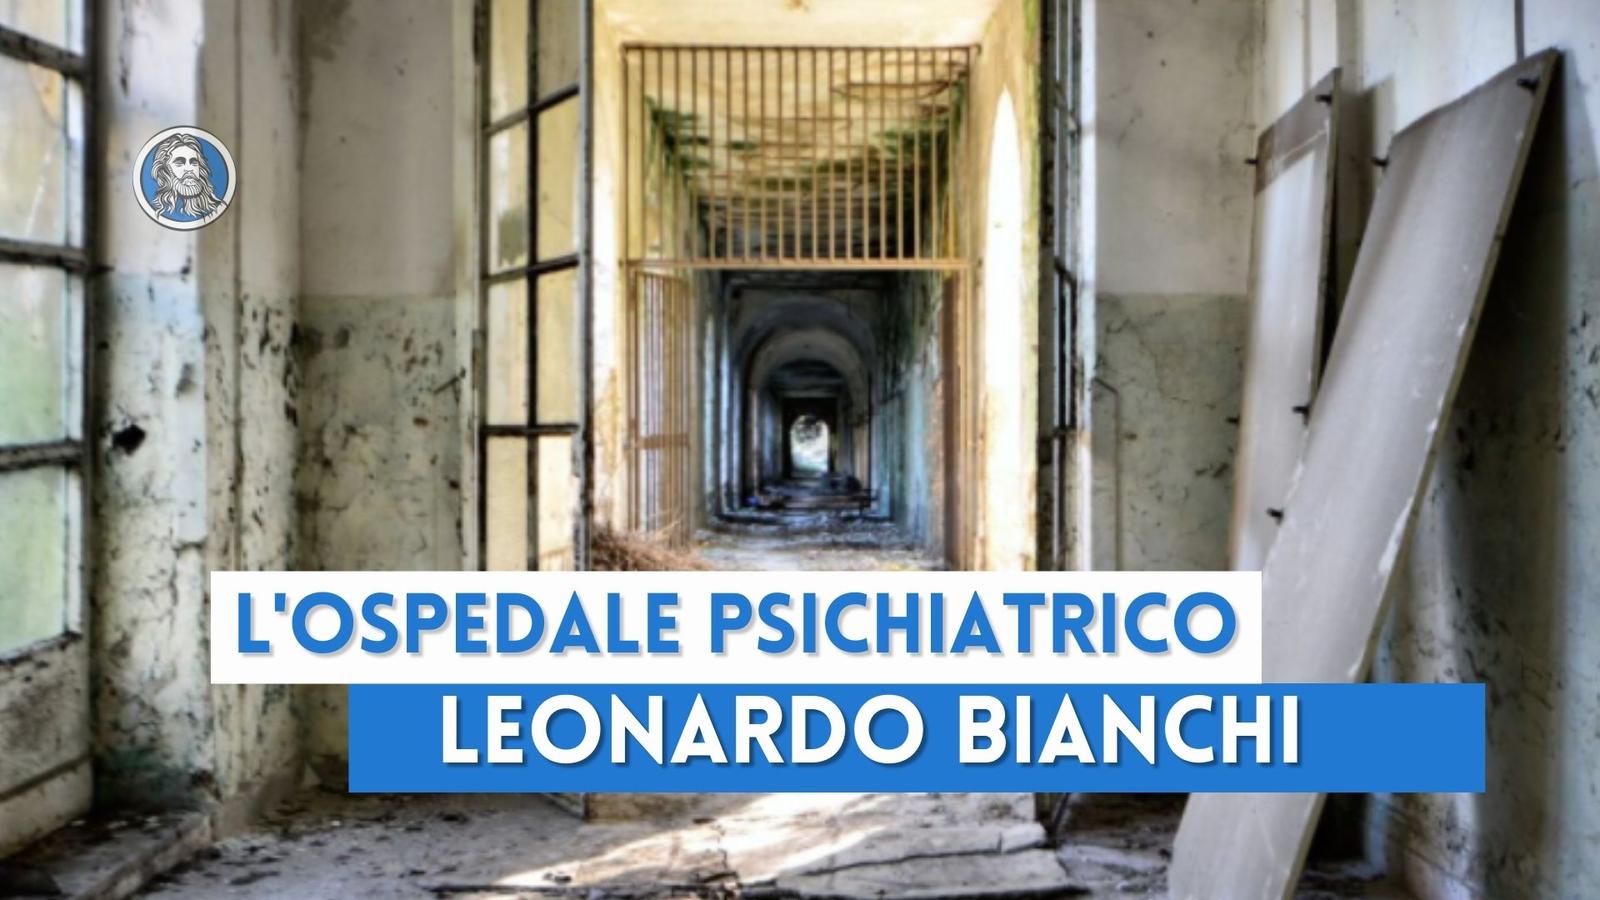 L'ospedale psichiatrico Leonardo Bianchi: un luogo di dolore perduto